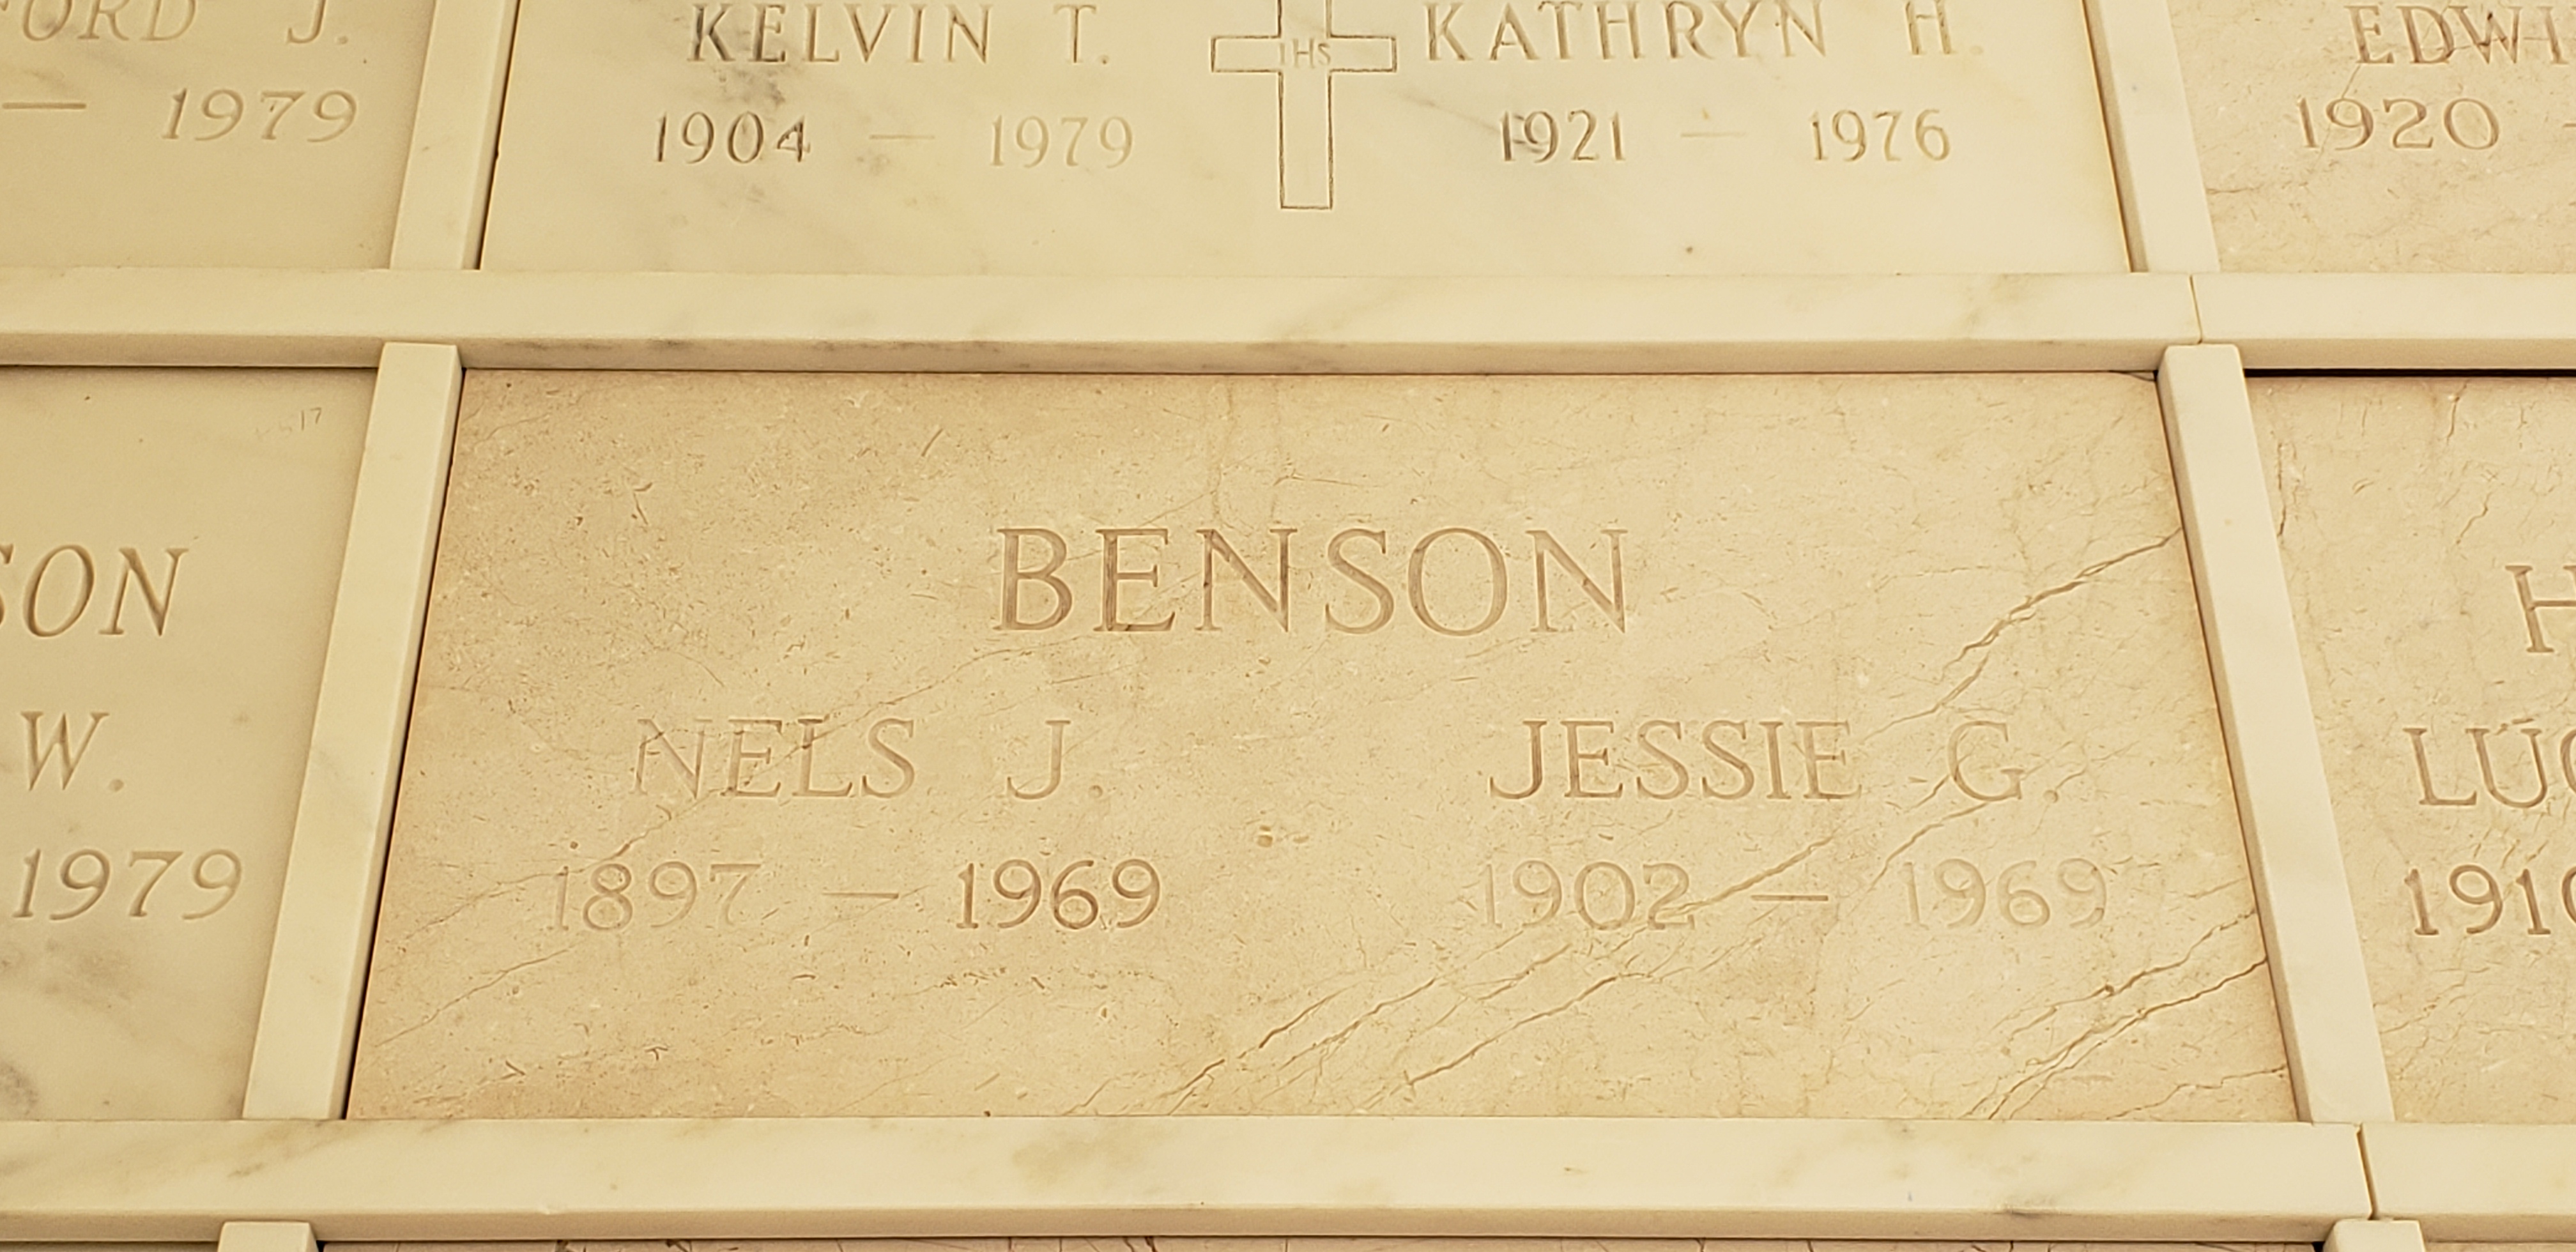 Jessie G Benson